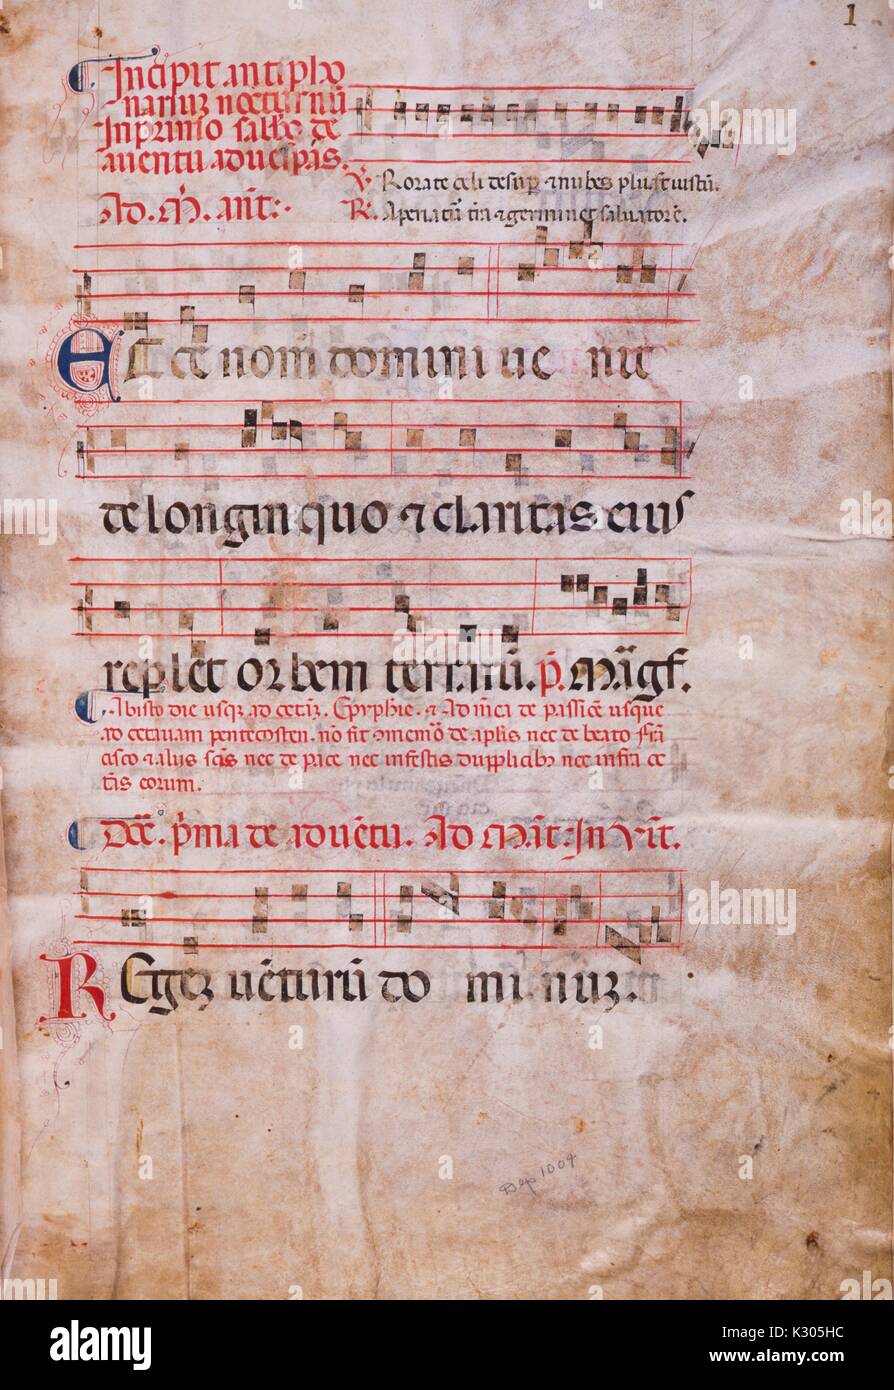 Bilderhandschrift Seite der Musik, von den "Incipit antiphonarium nocturnum", aus dem 15. Jahrhundert Latein von der Katholischen Kirche, 2013 antiphonar. Stockfoto